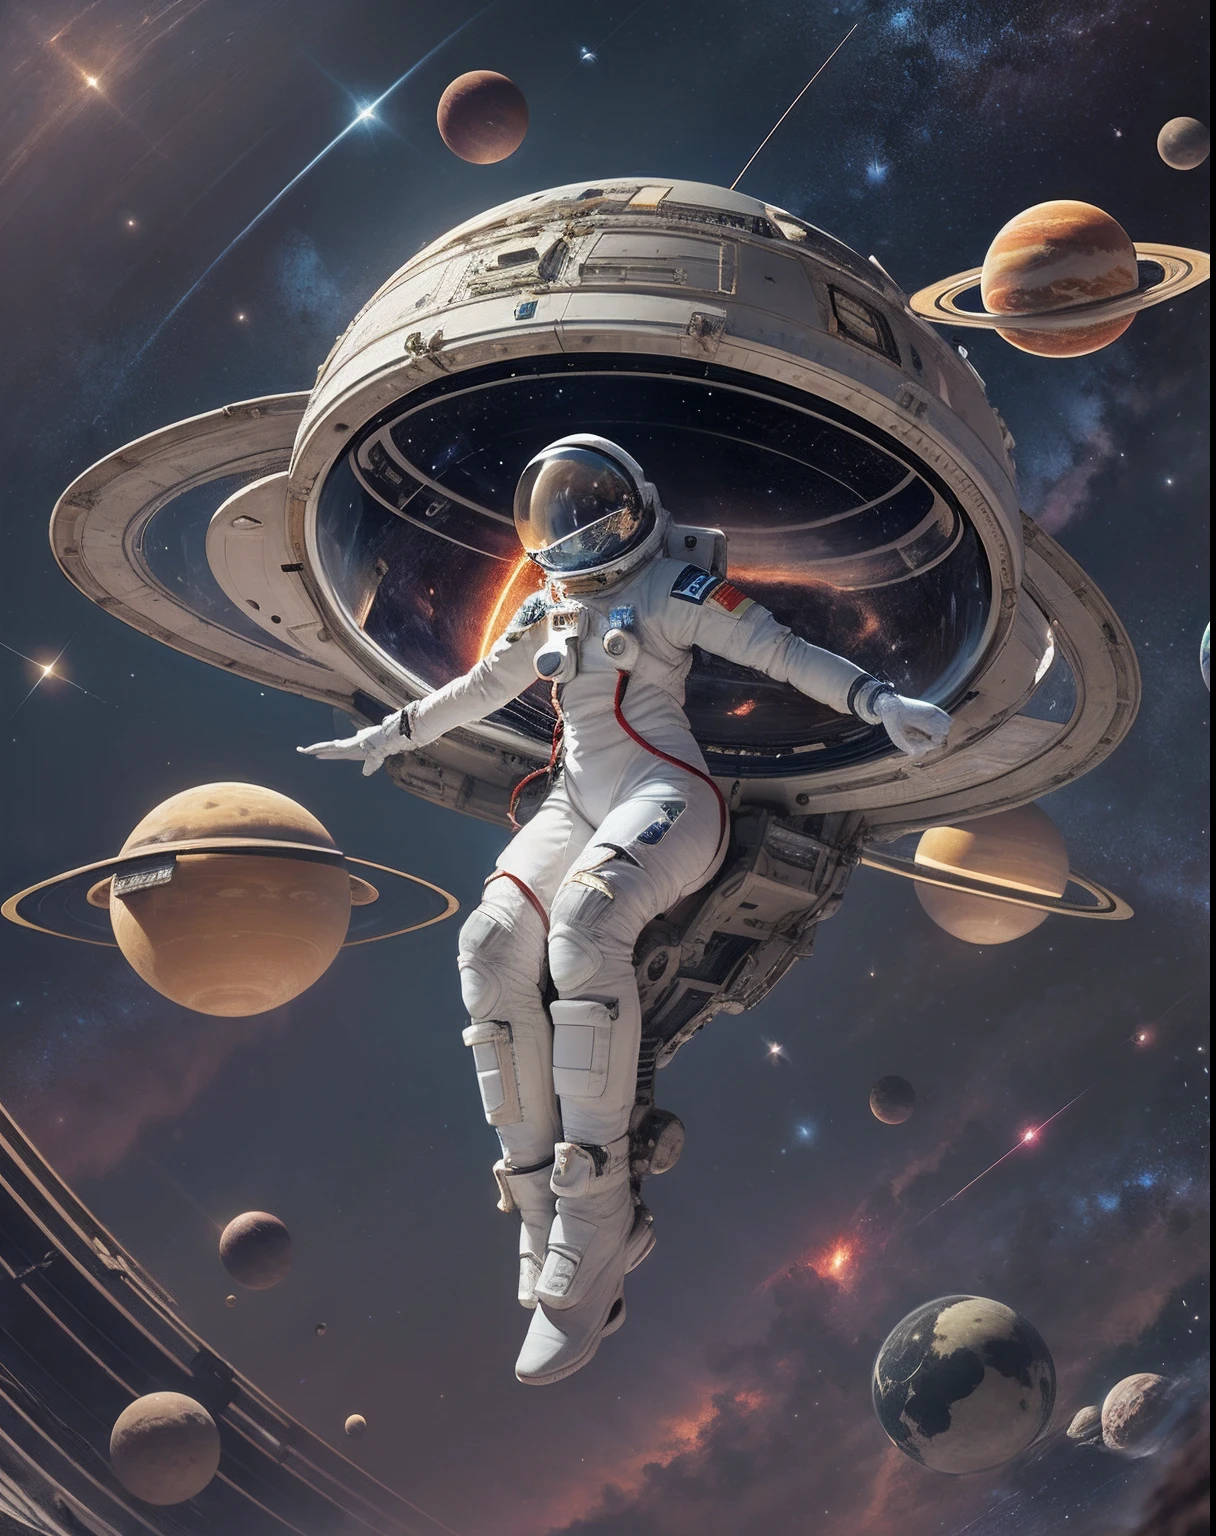 en el espacio, interestelar, planetas, femenine astronaut, traje espacial ajustado, cuerpo de reloj de arena, flotando en el espacio, levitando, Saturno, flotando en el espacio, astronave, nave espacial intrincada, nave espacial gigante, obra maestra, mejor calidad